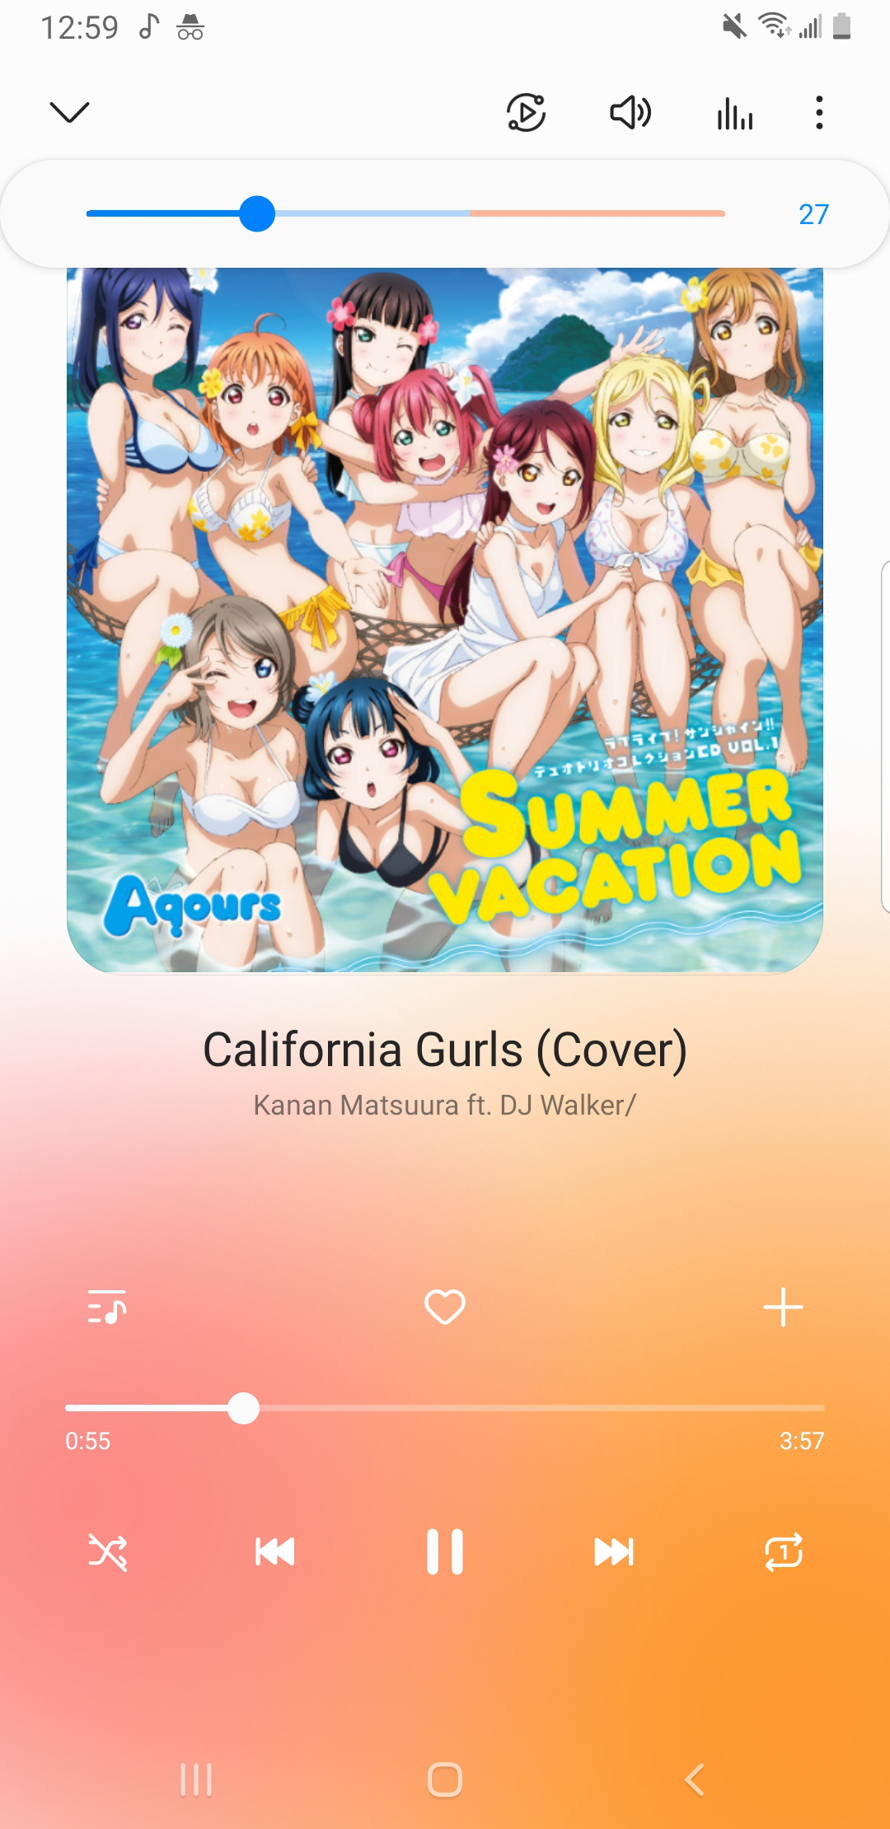 How if Kanan Matsuura and my OC DJ Walker made a California Gurls cover?